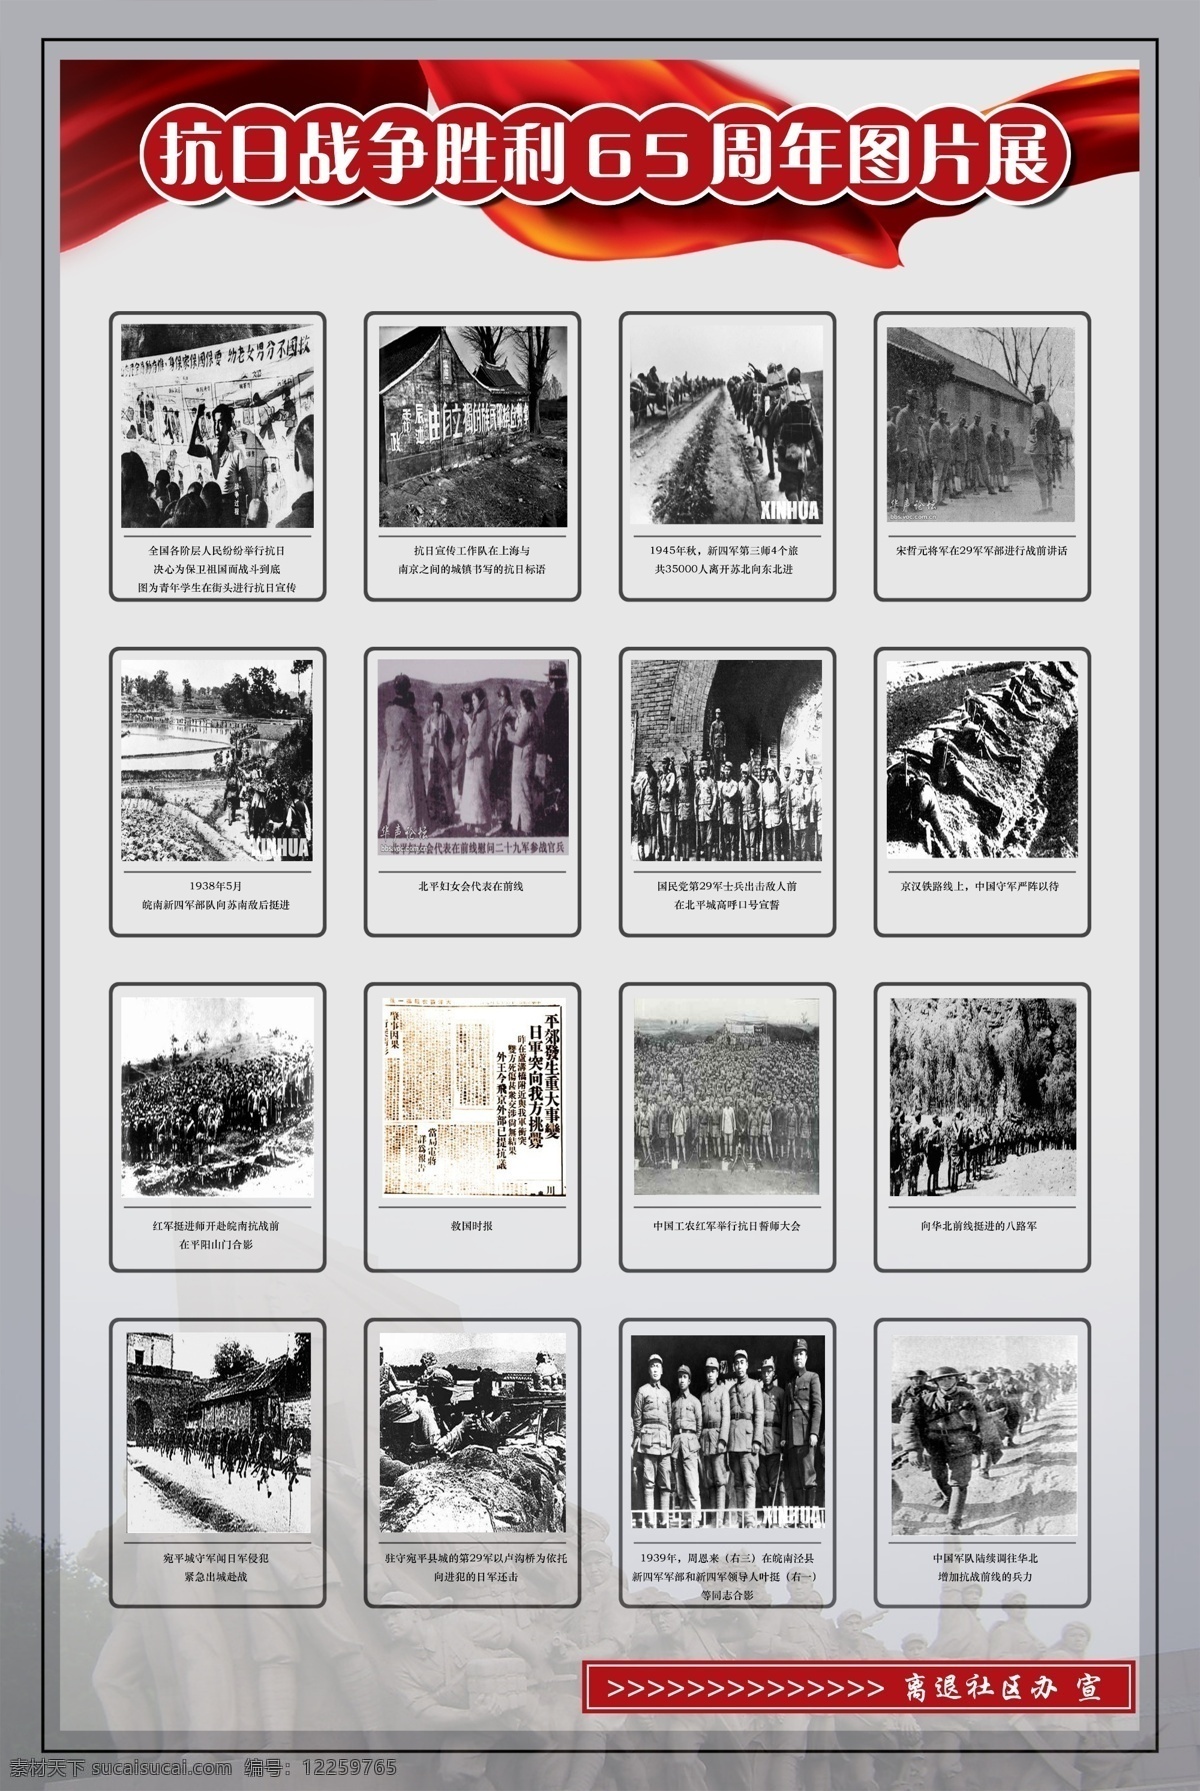 抗日战争 周年 图片展 胜利 日本鬼子 八路军 展板 七七事变 纪念 抗日 展板模板 广告设计模板 源文件